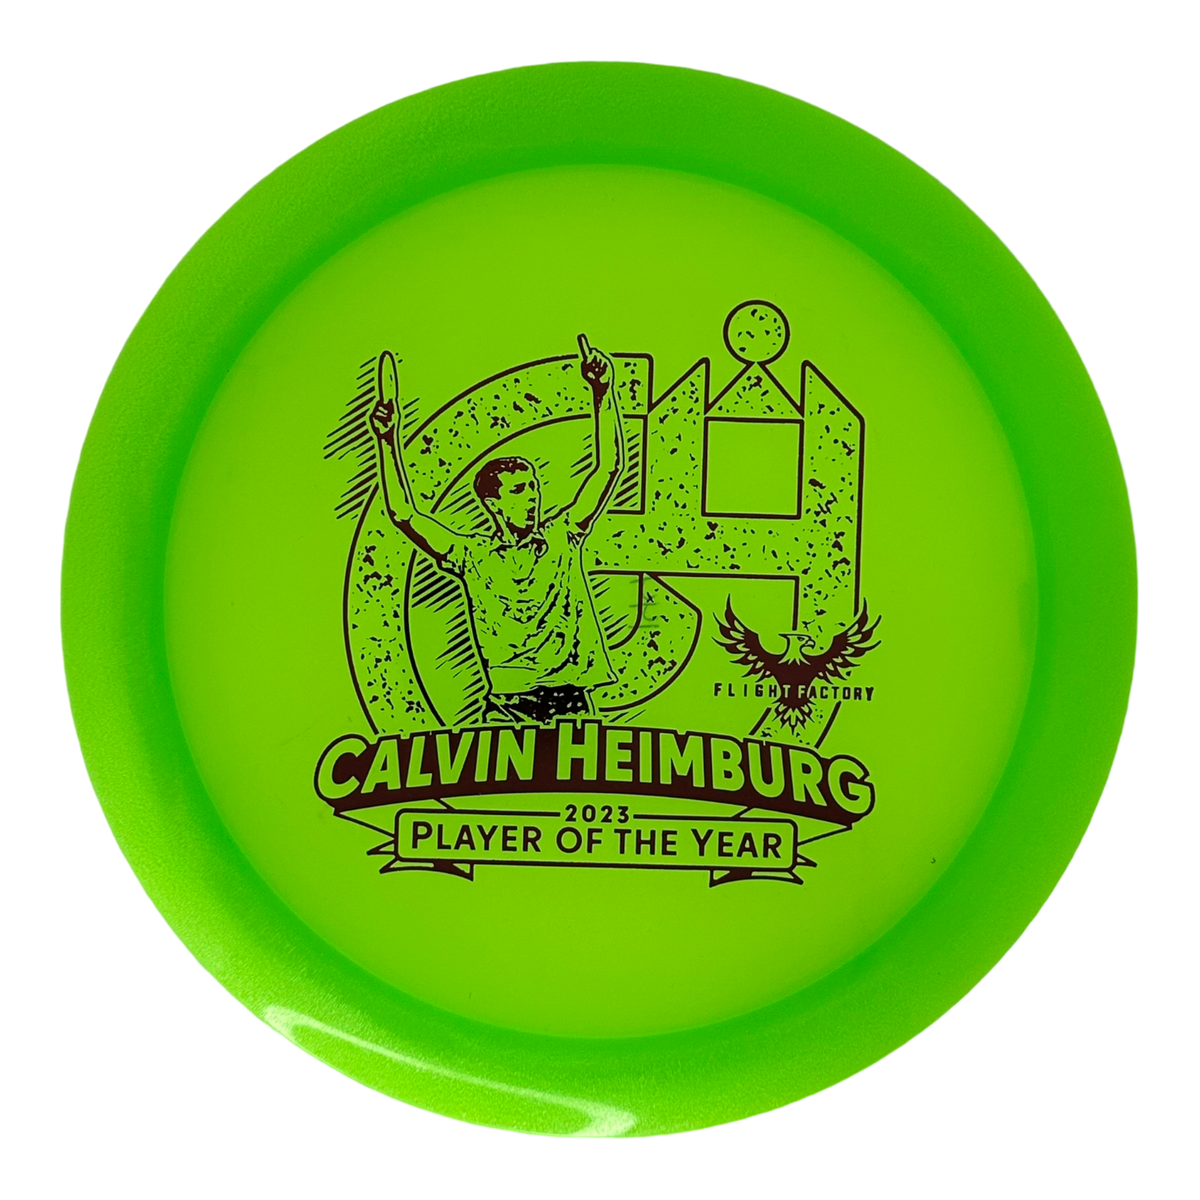 Innova Champion Mamba - Calvin Heimburg Player of the Year (2023)